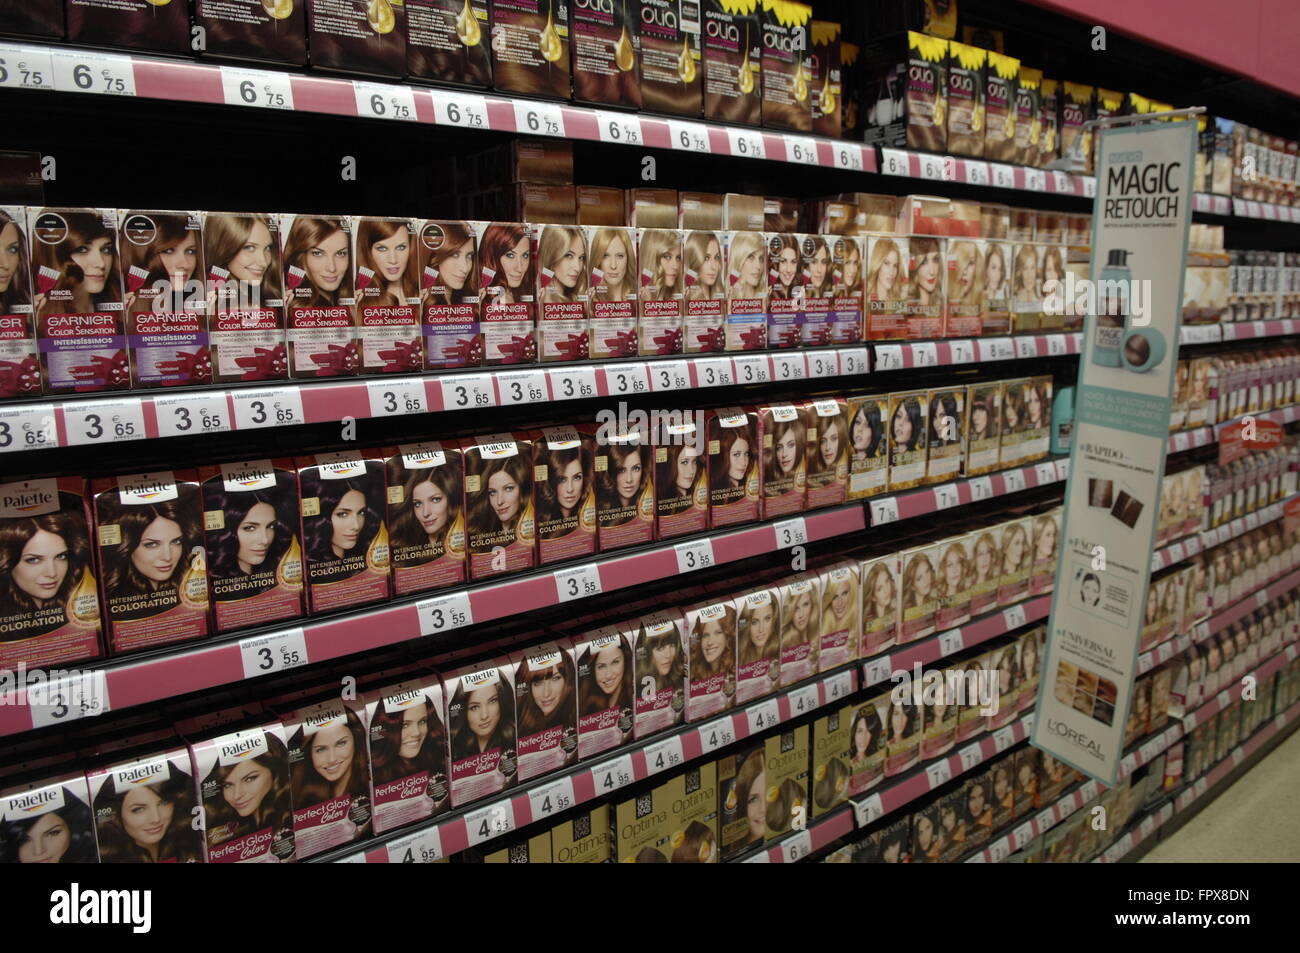 Haare färben Produktpalette für Frau auf dem Display in einem Carrefour-Supermarkt in Spanien. Stockfoto